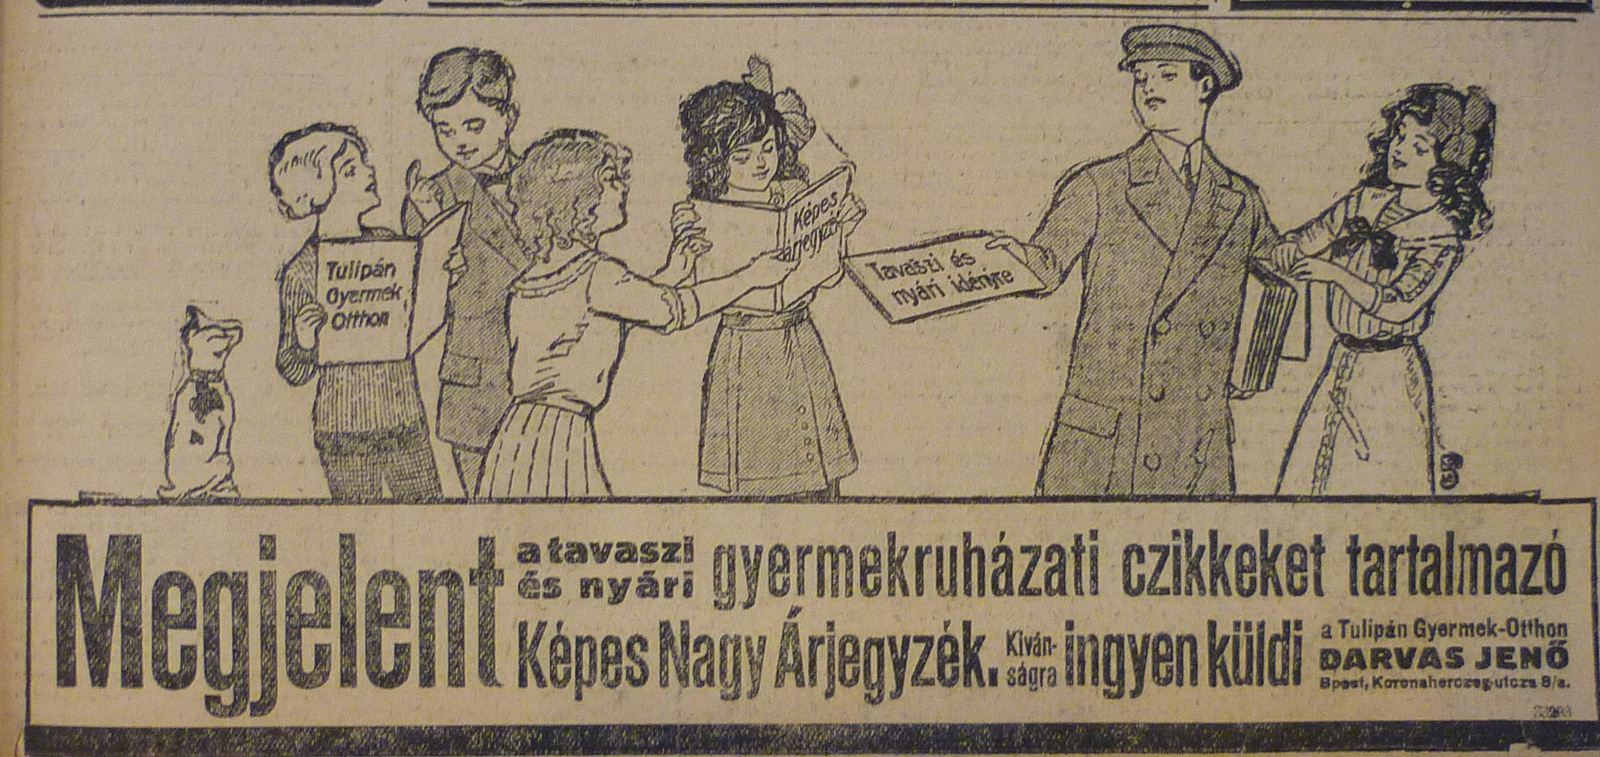 TulipanGyermekotthon-Ujpest-1913-AzEstHirdetes